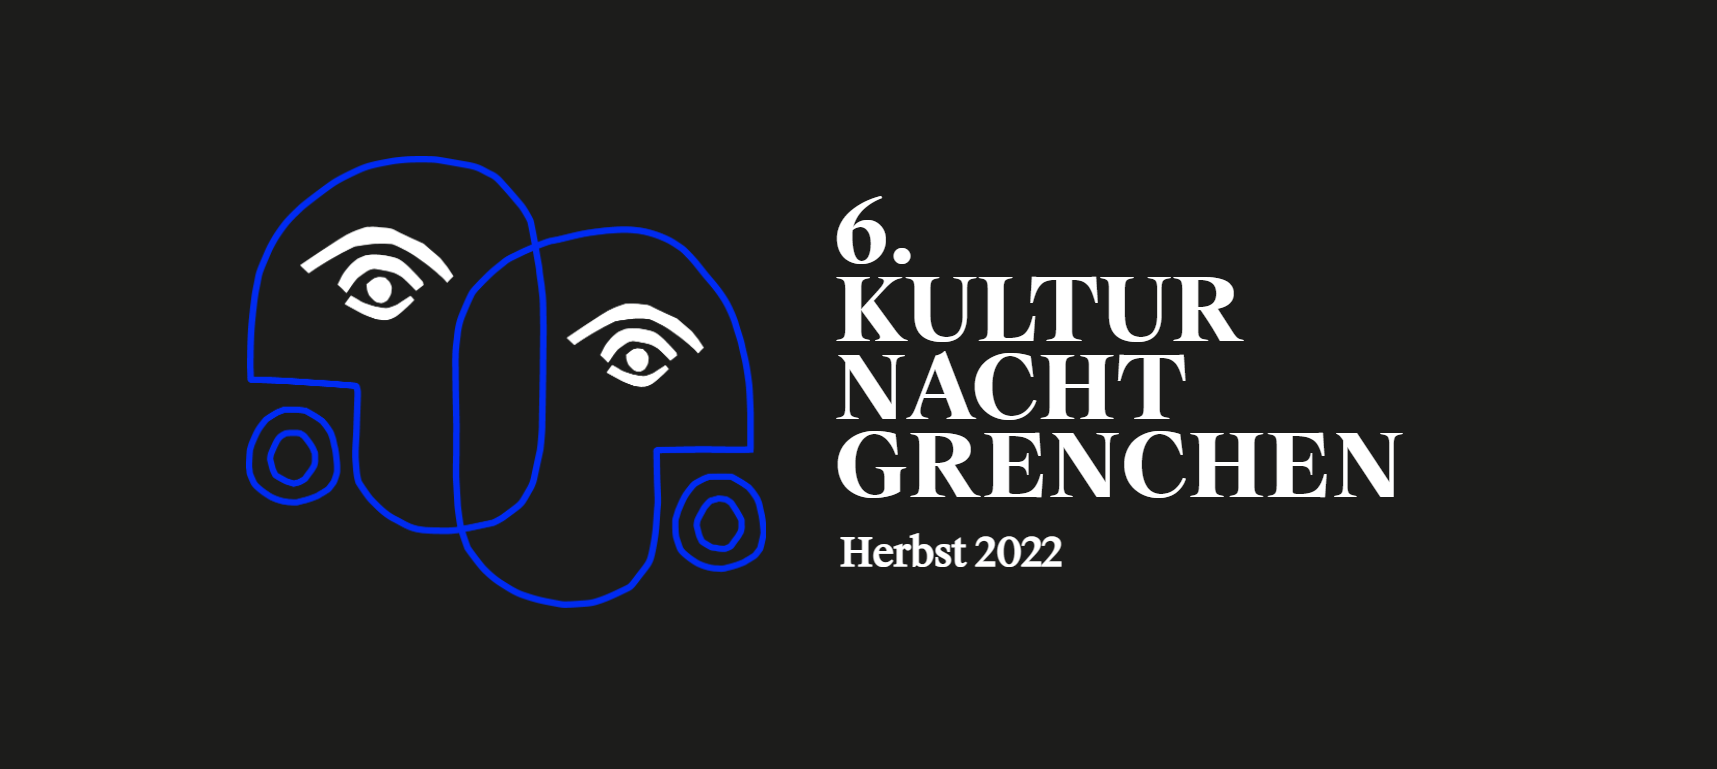 Kulturnacht Grenchen 2022